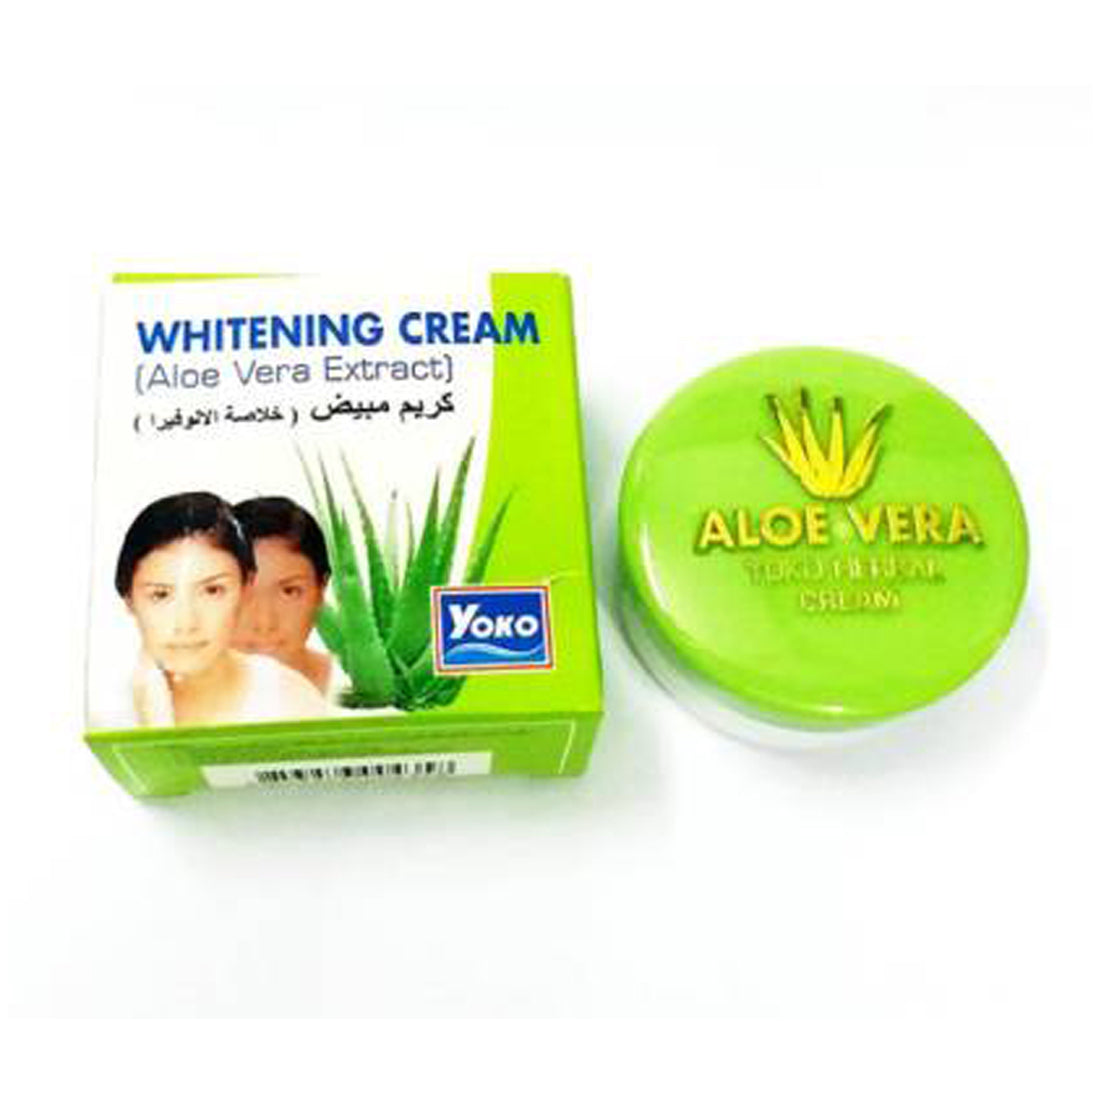 Yoko Fairness Whitening Cream Aloe Vera Extract 4gm